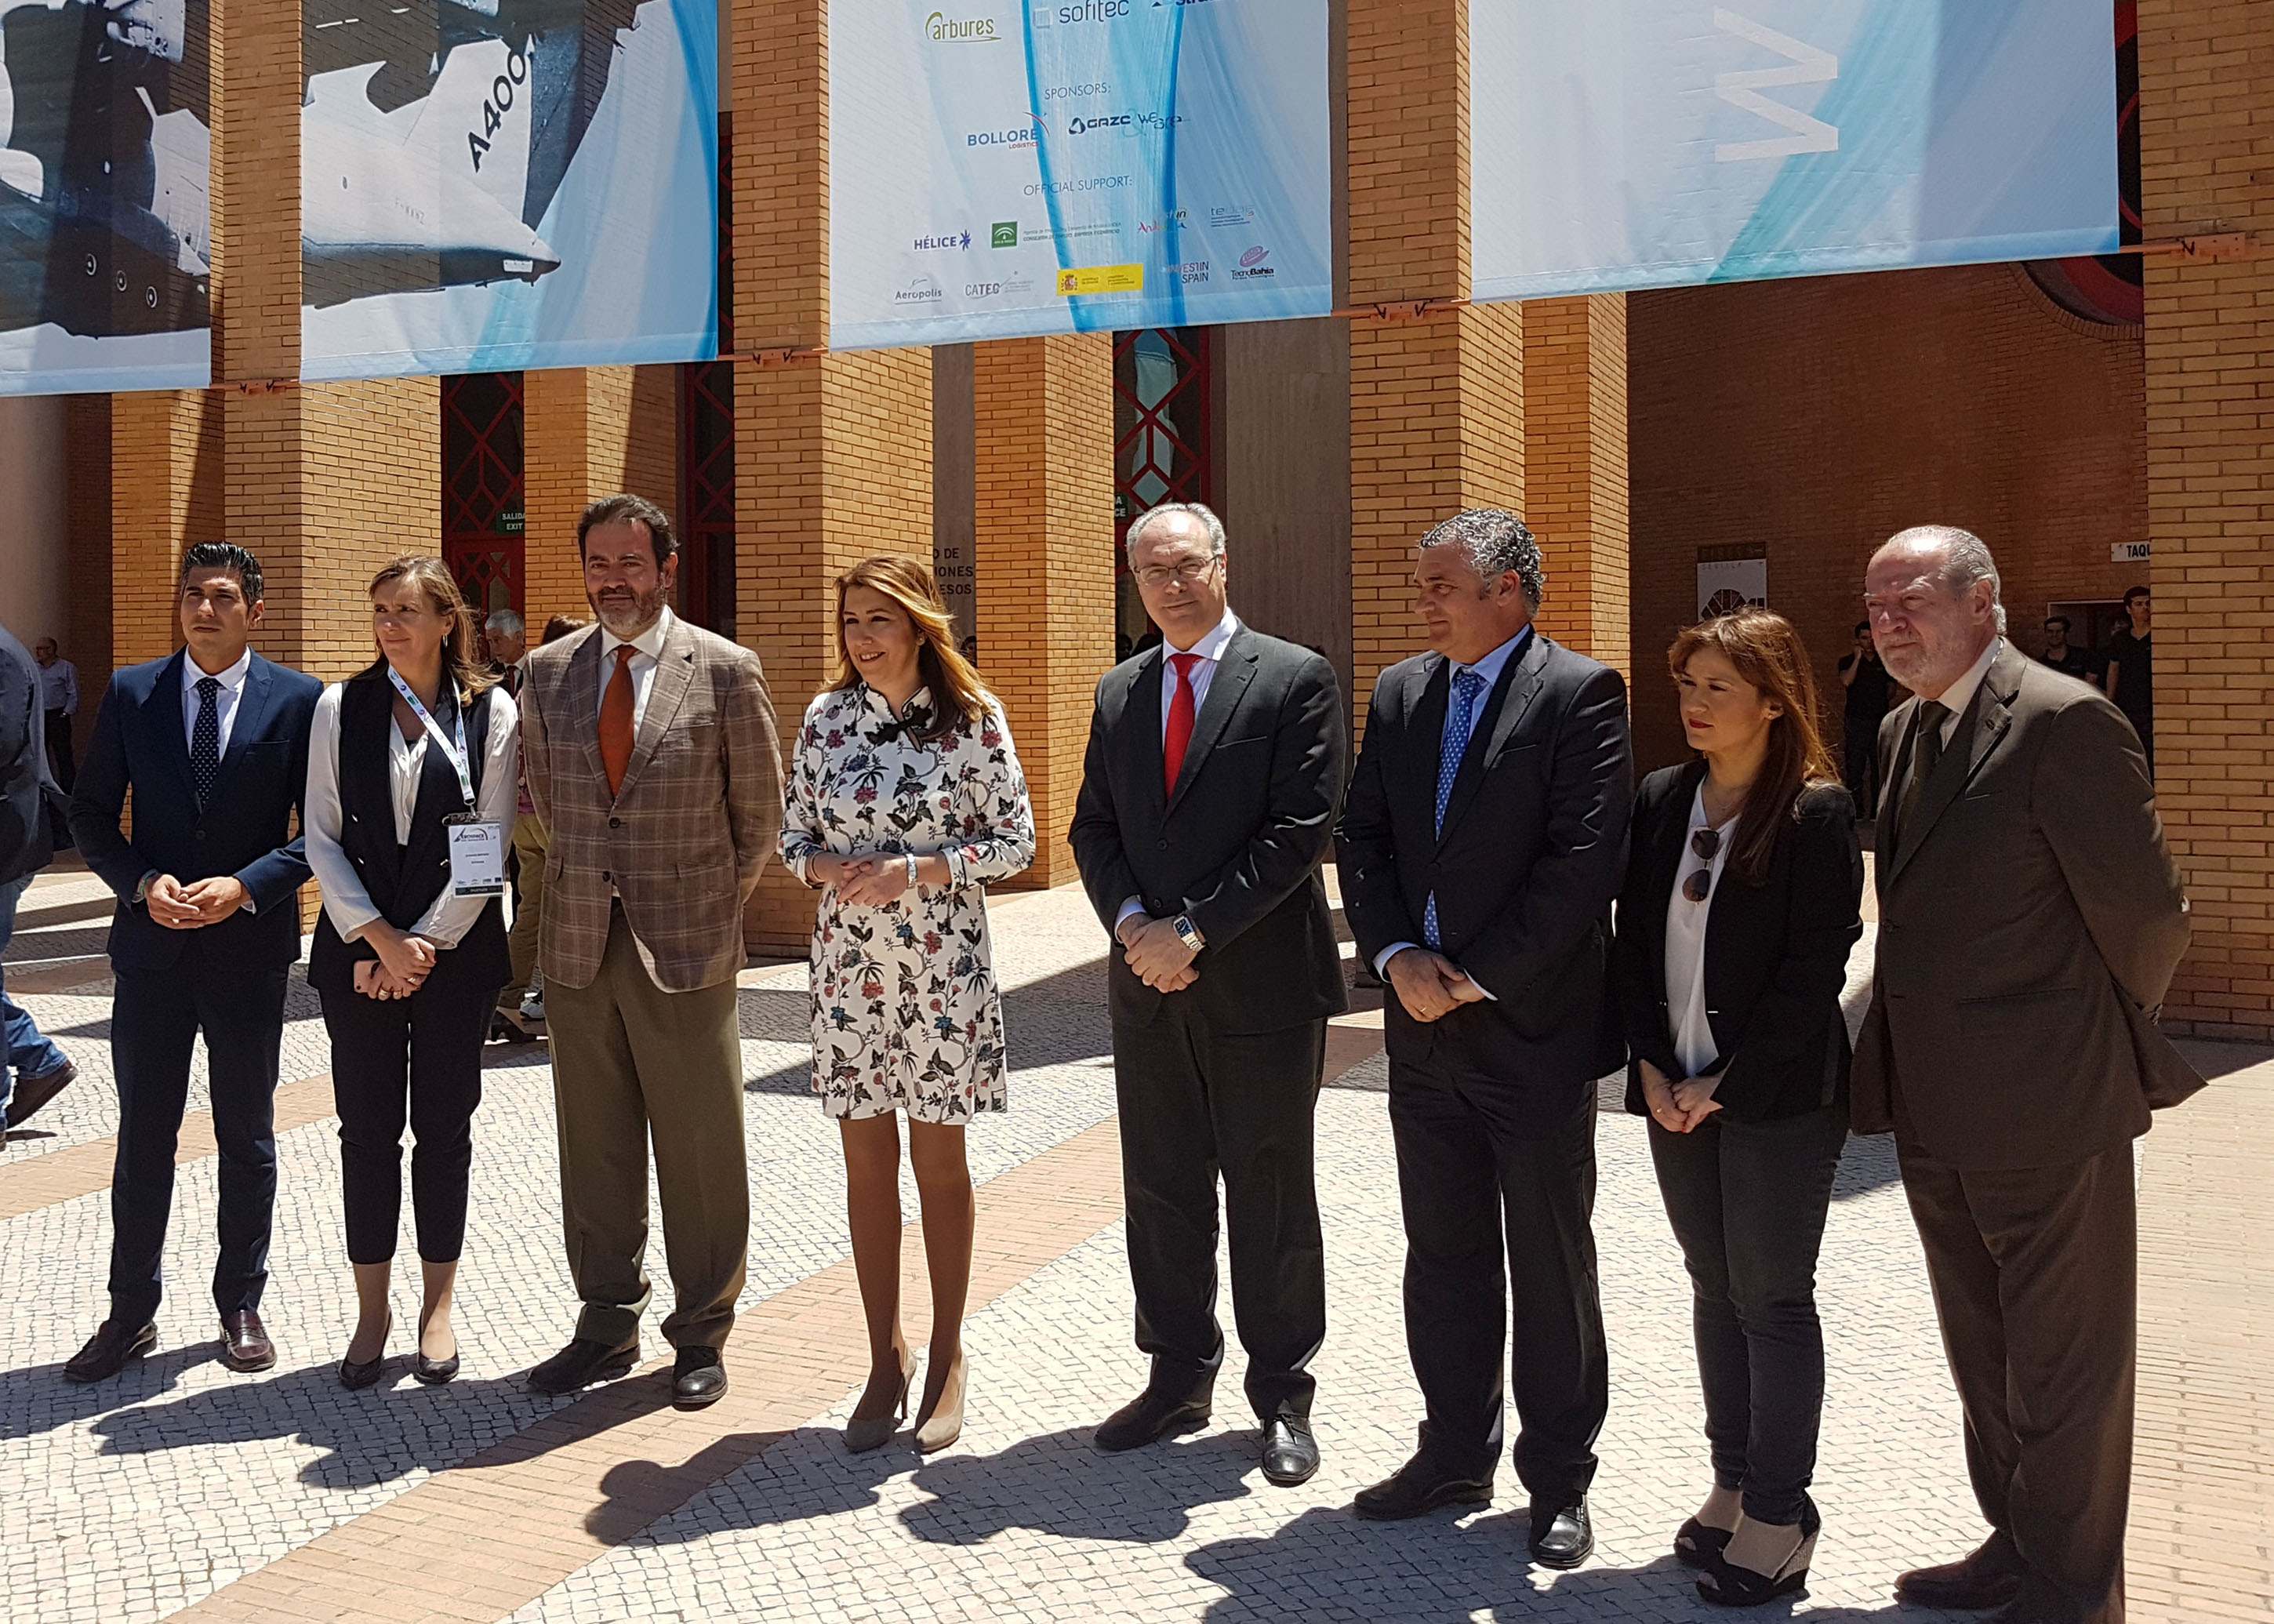 Juan Pablo Durn, presidente del Parlamento y Susana Daz, presidenta de la Junta de Andaluca, junto a otras autoridades en el acto de apertura del Programa de Conferencias de Aerospace&Defense Meetings Sevilla 2018